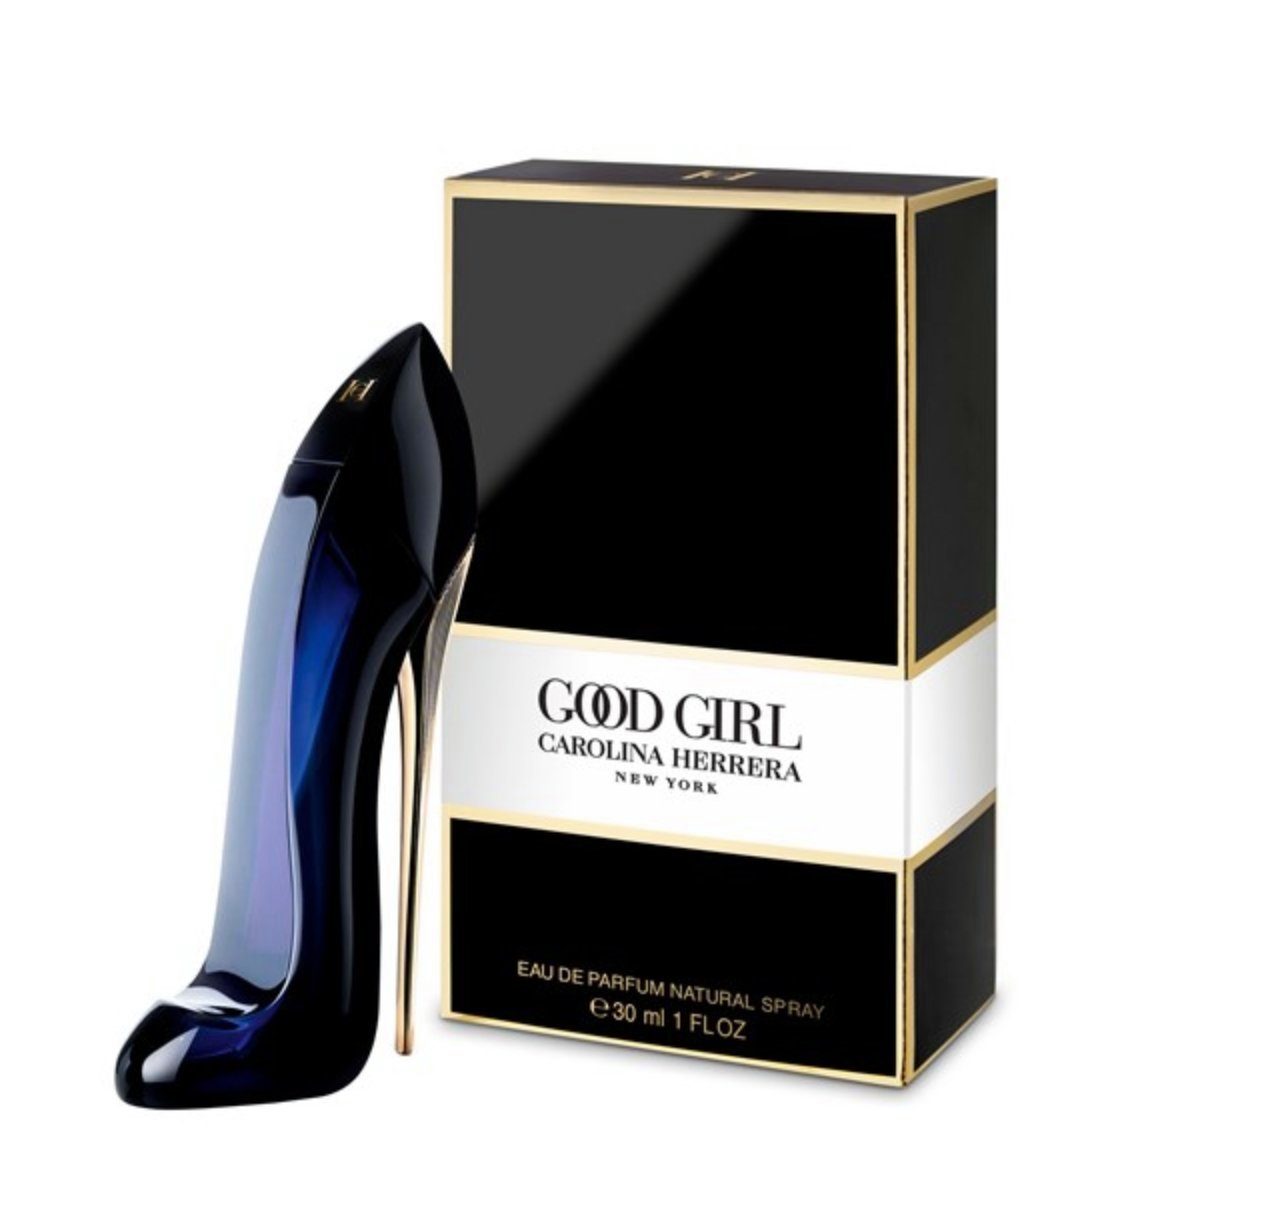 Good Parfum de de Carolina Eau Parfum Herrera Girl Eau